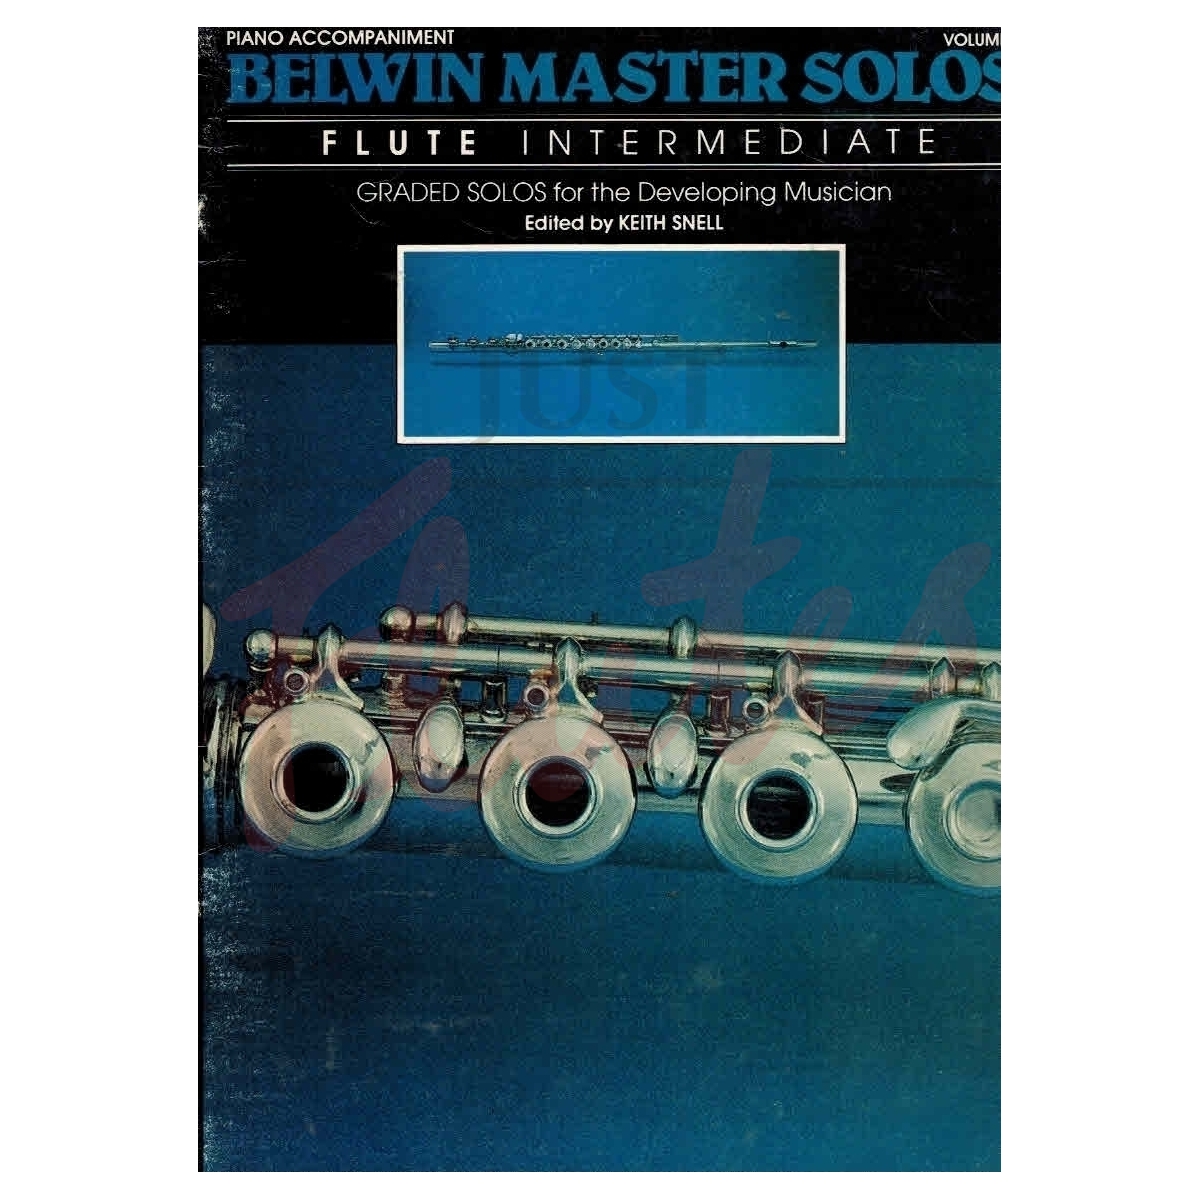 Belwin Master Solos, Intermediate [Piano Accompaniment]